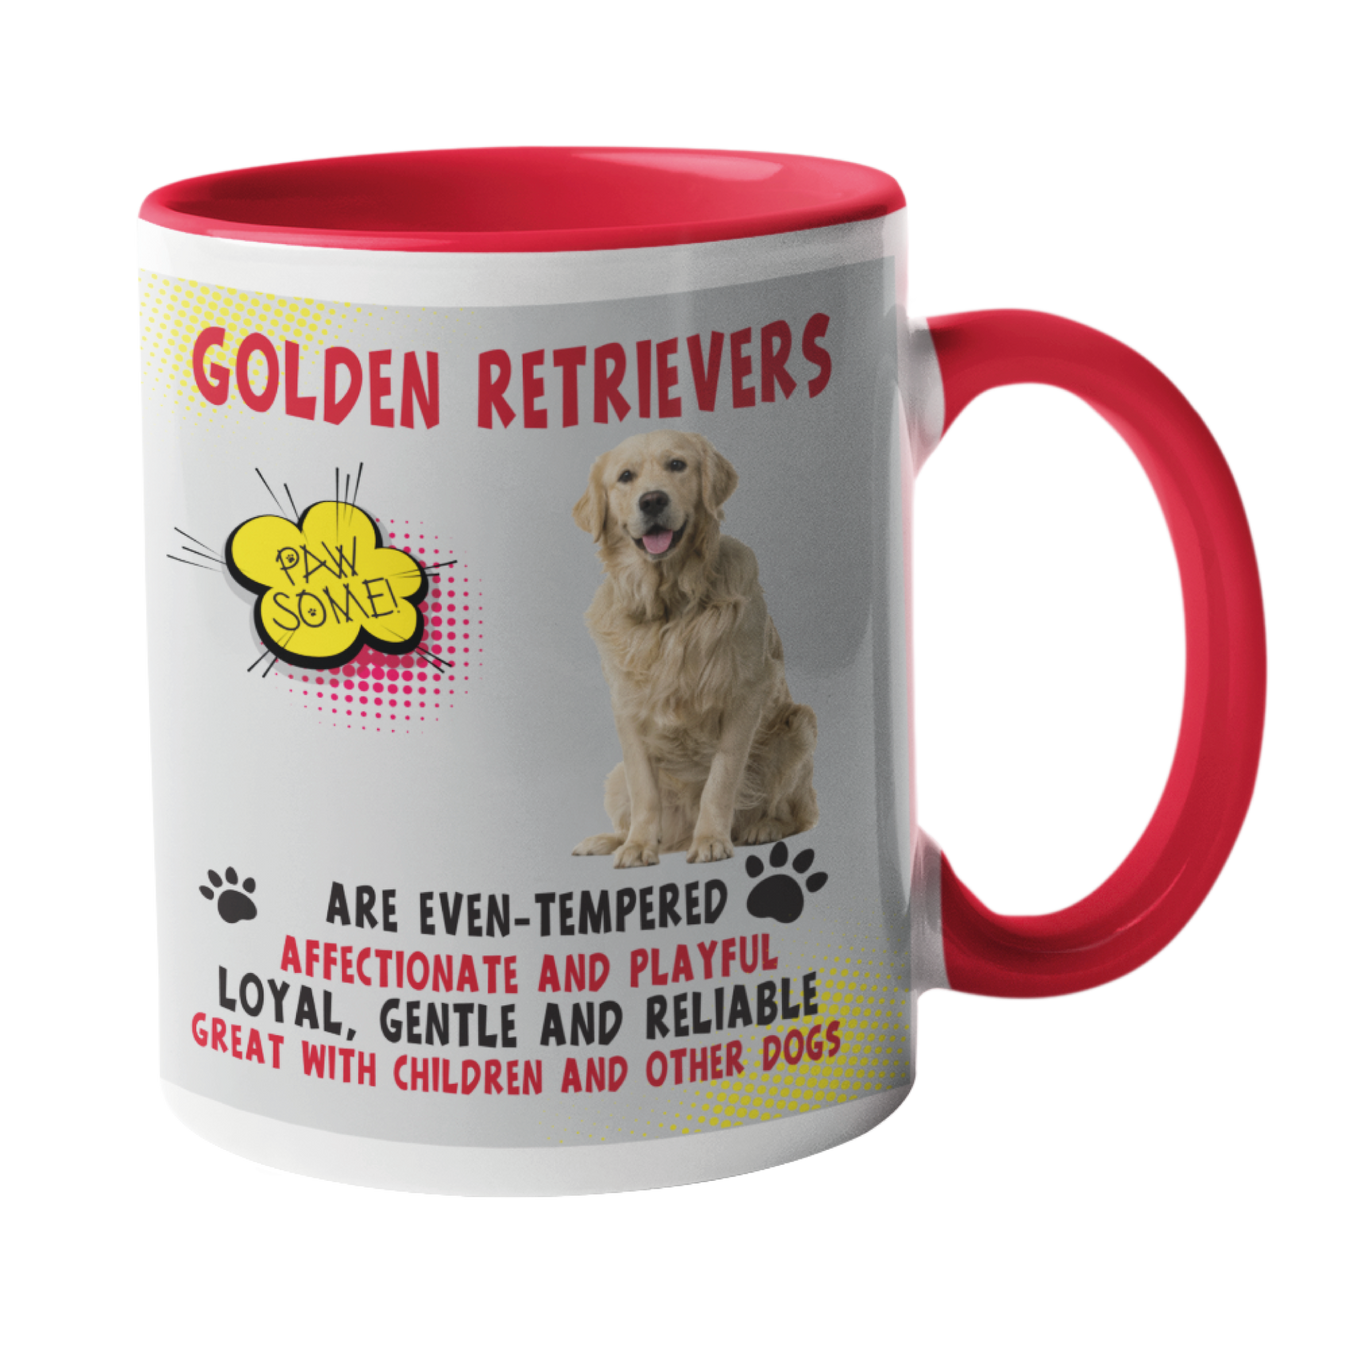 Golden Retrievers